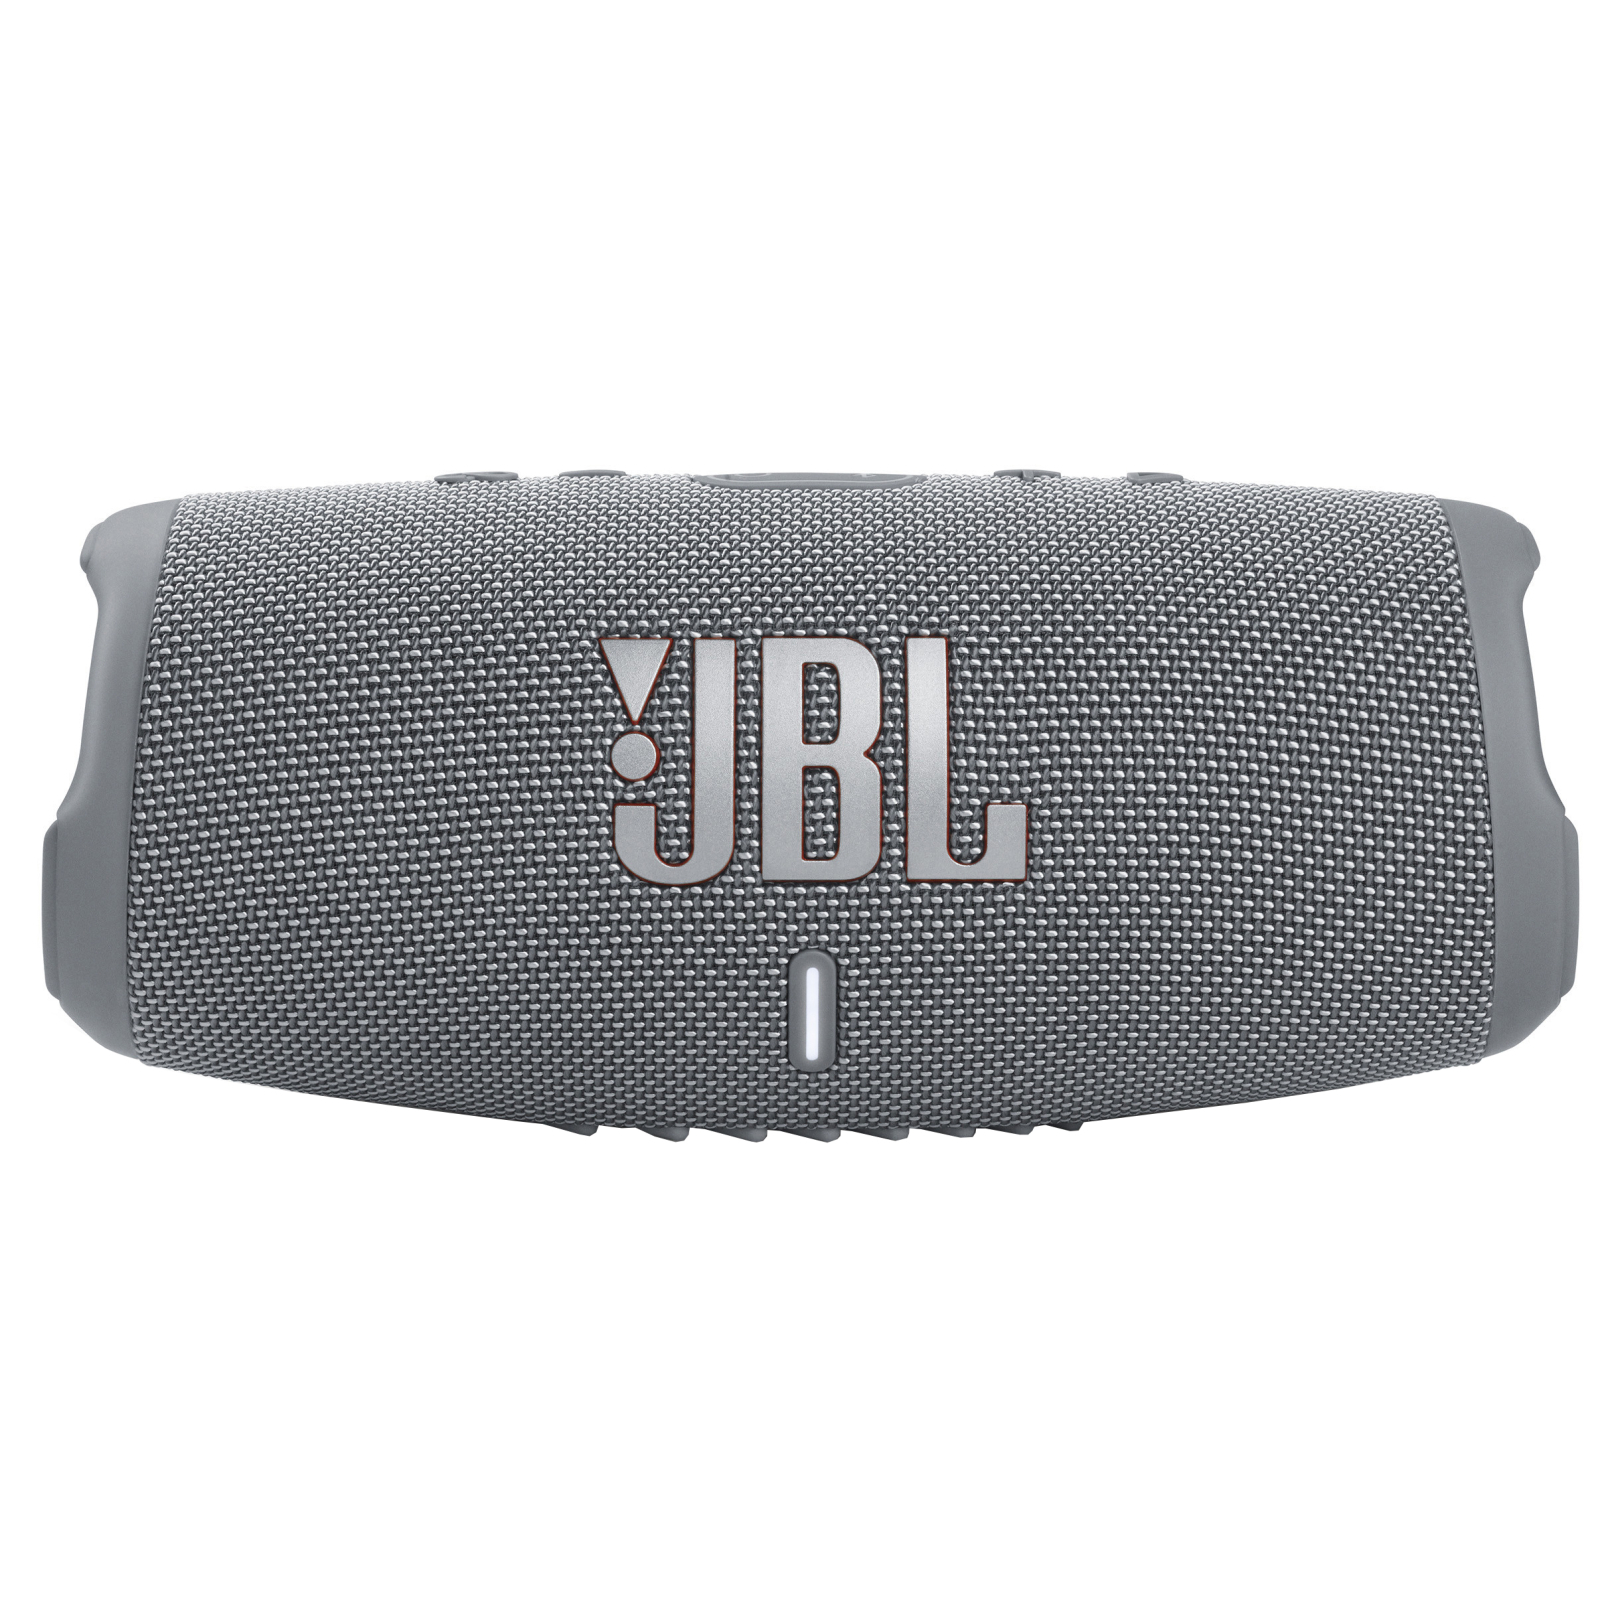 Акустическая система JBL Charge 5 Black + Griffin 20000 mAh (JBLCHARGE5BLKPB)